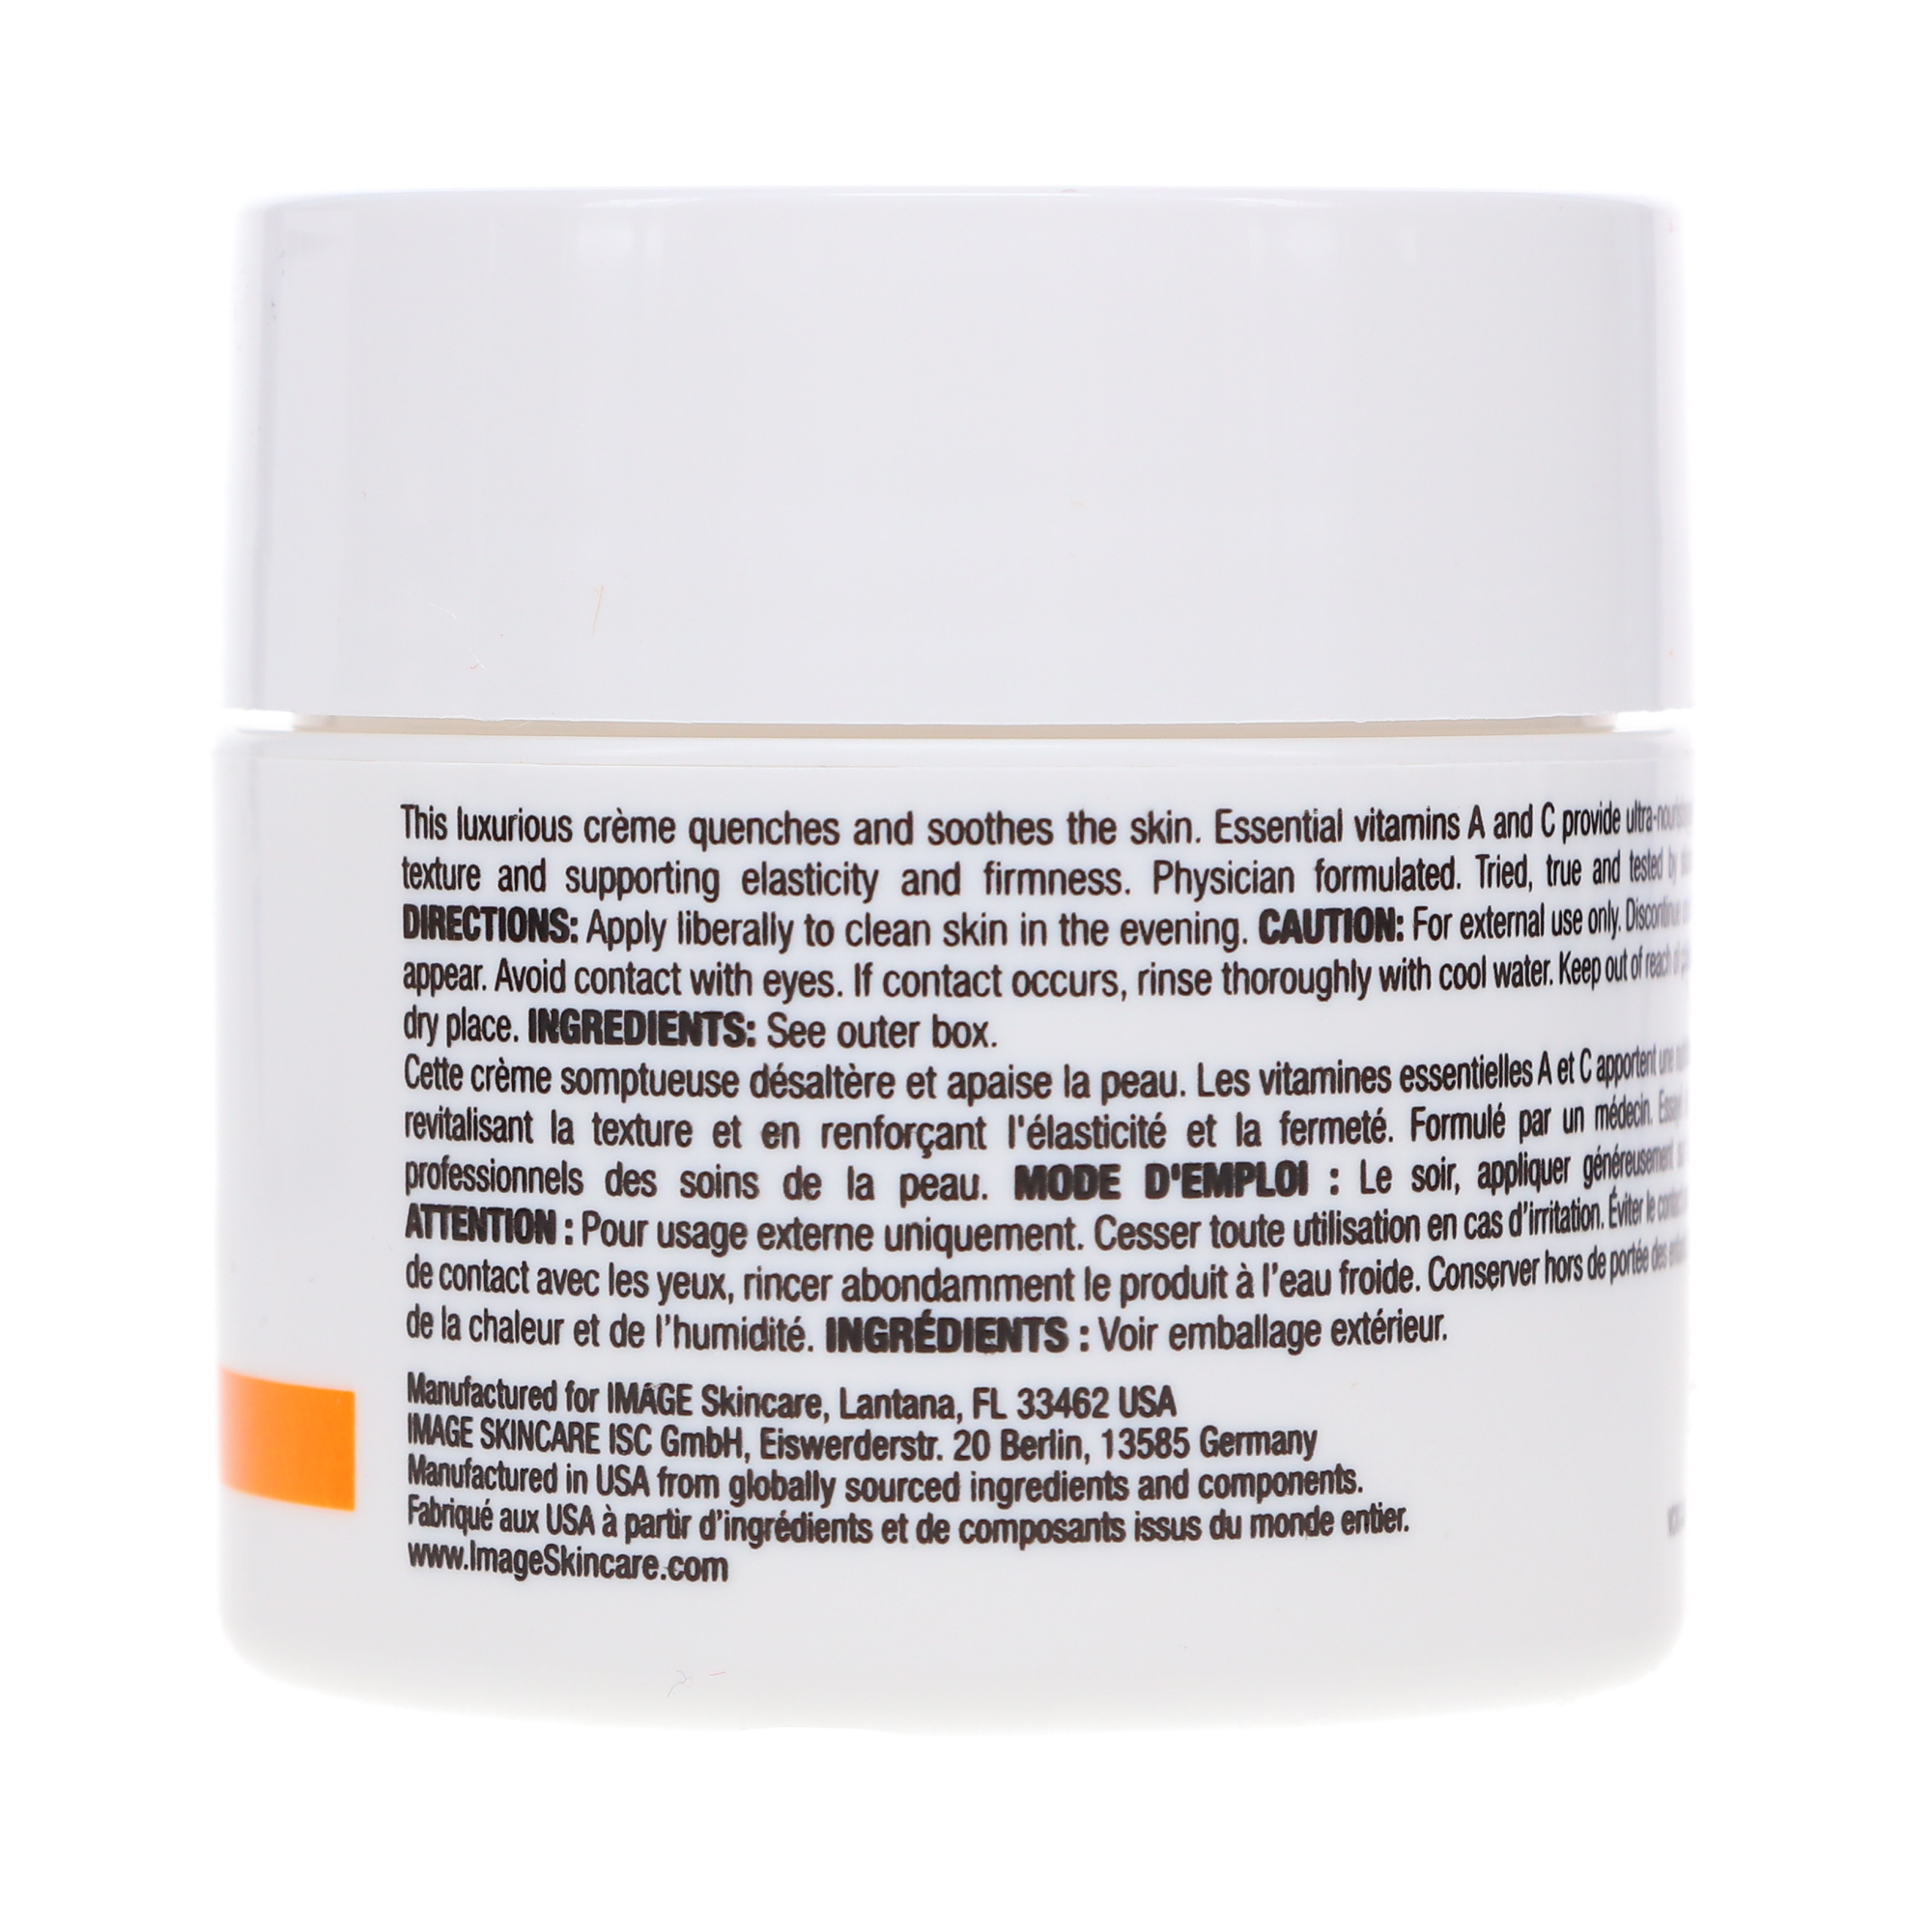 IMAGE Skincare Vital C Hydrating Repair Creme 2 oz - image 5 of 8